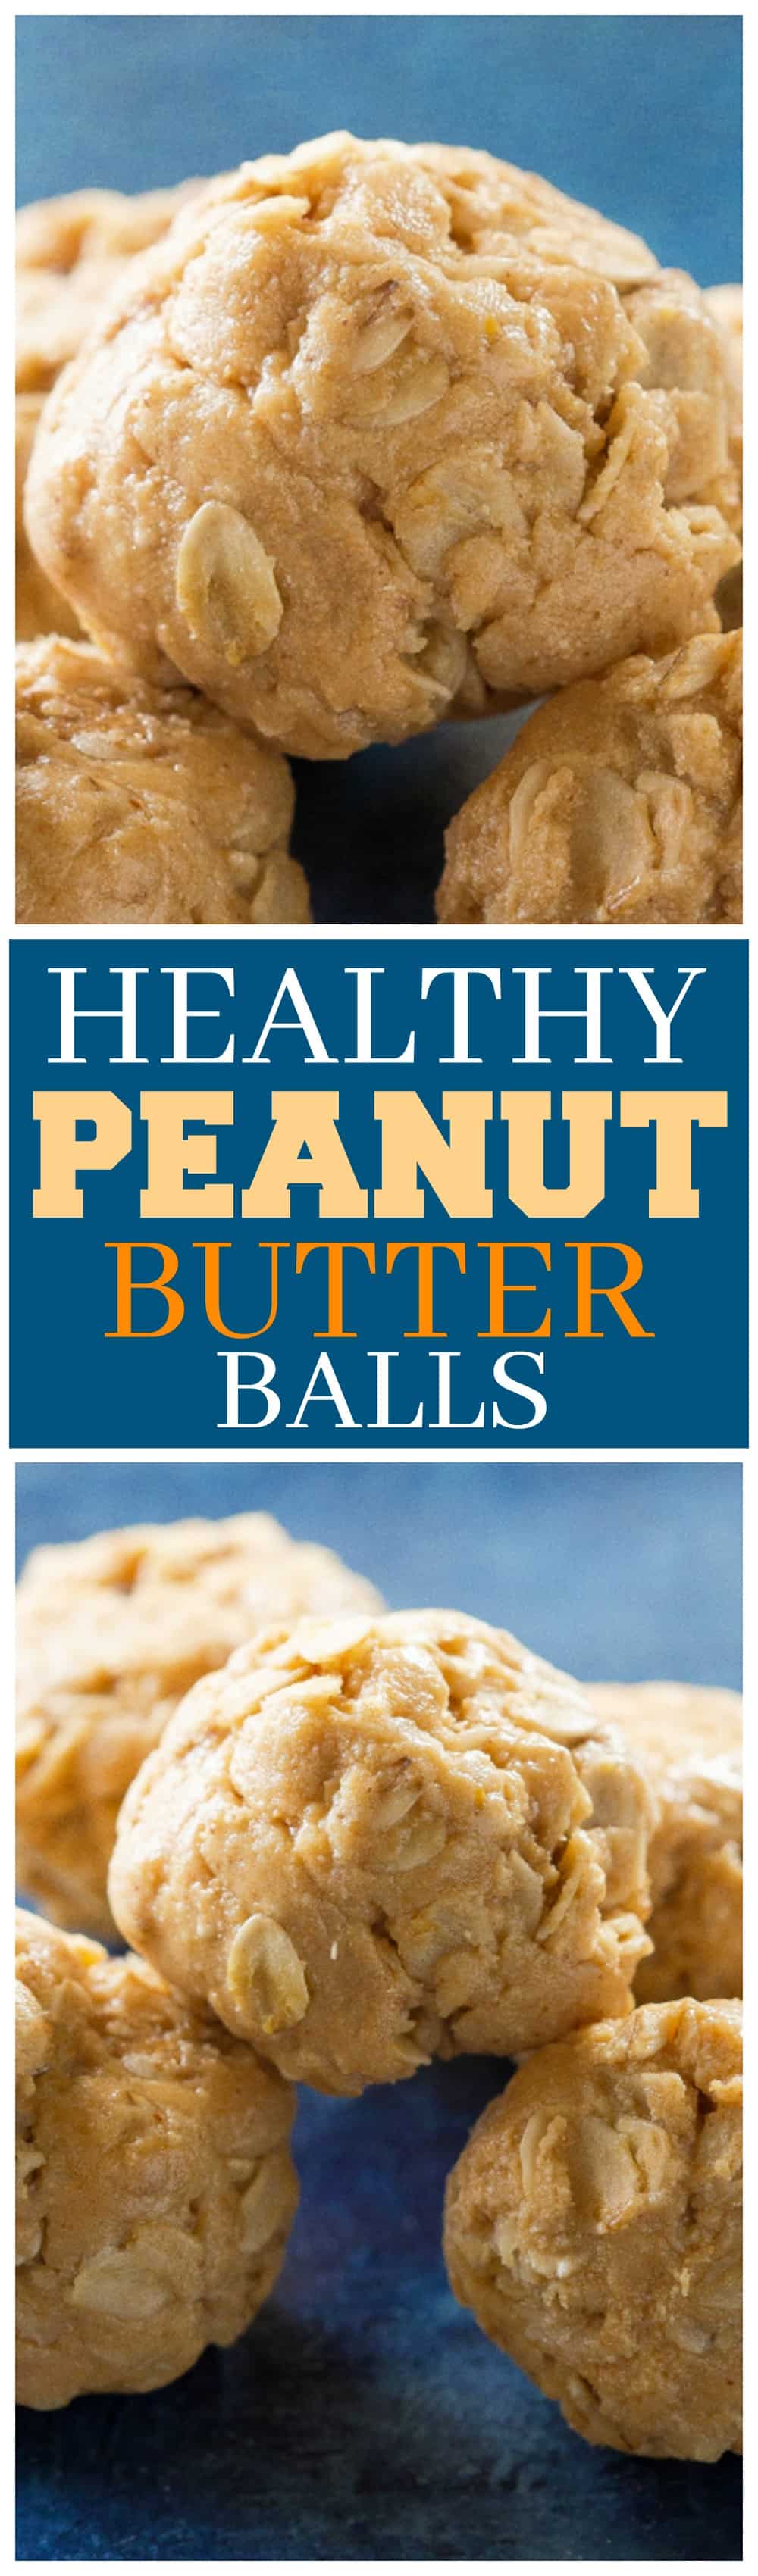 Estas Bolas de Manteiga de Amendoim Saudáveis ​​são um ótimo lanche depois da escola para seus filhos ou adultos.  Ingredientes simples nestas pequenas bolas de energia.  #saudável #manteigadeamendoim #bolas #snack